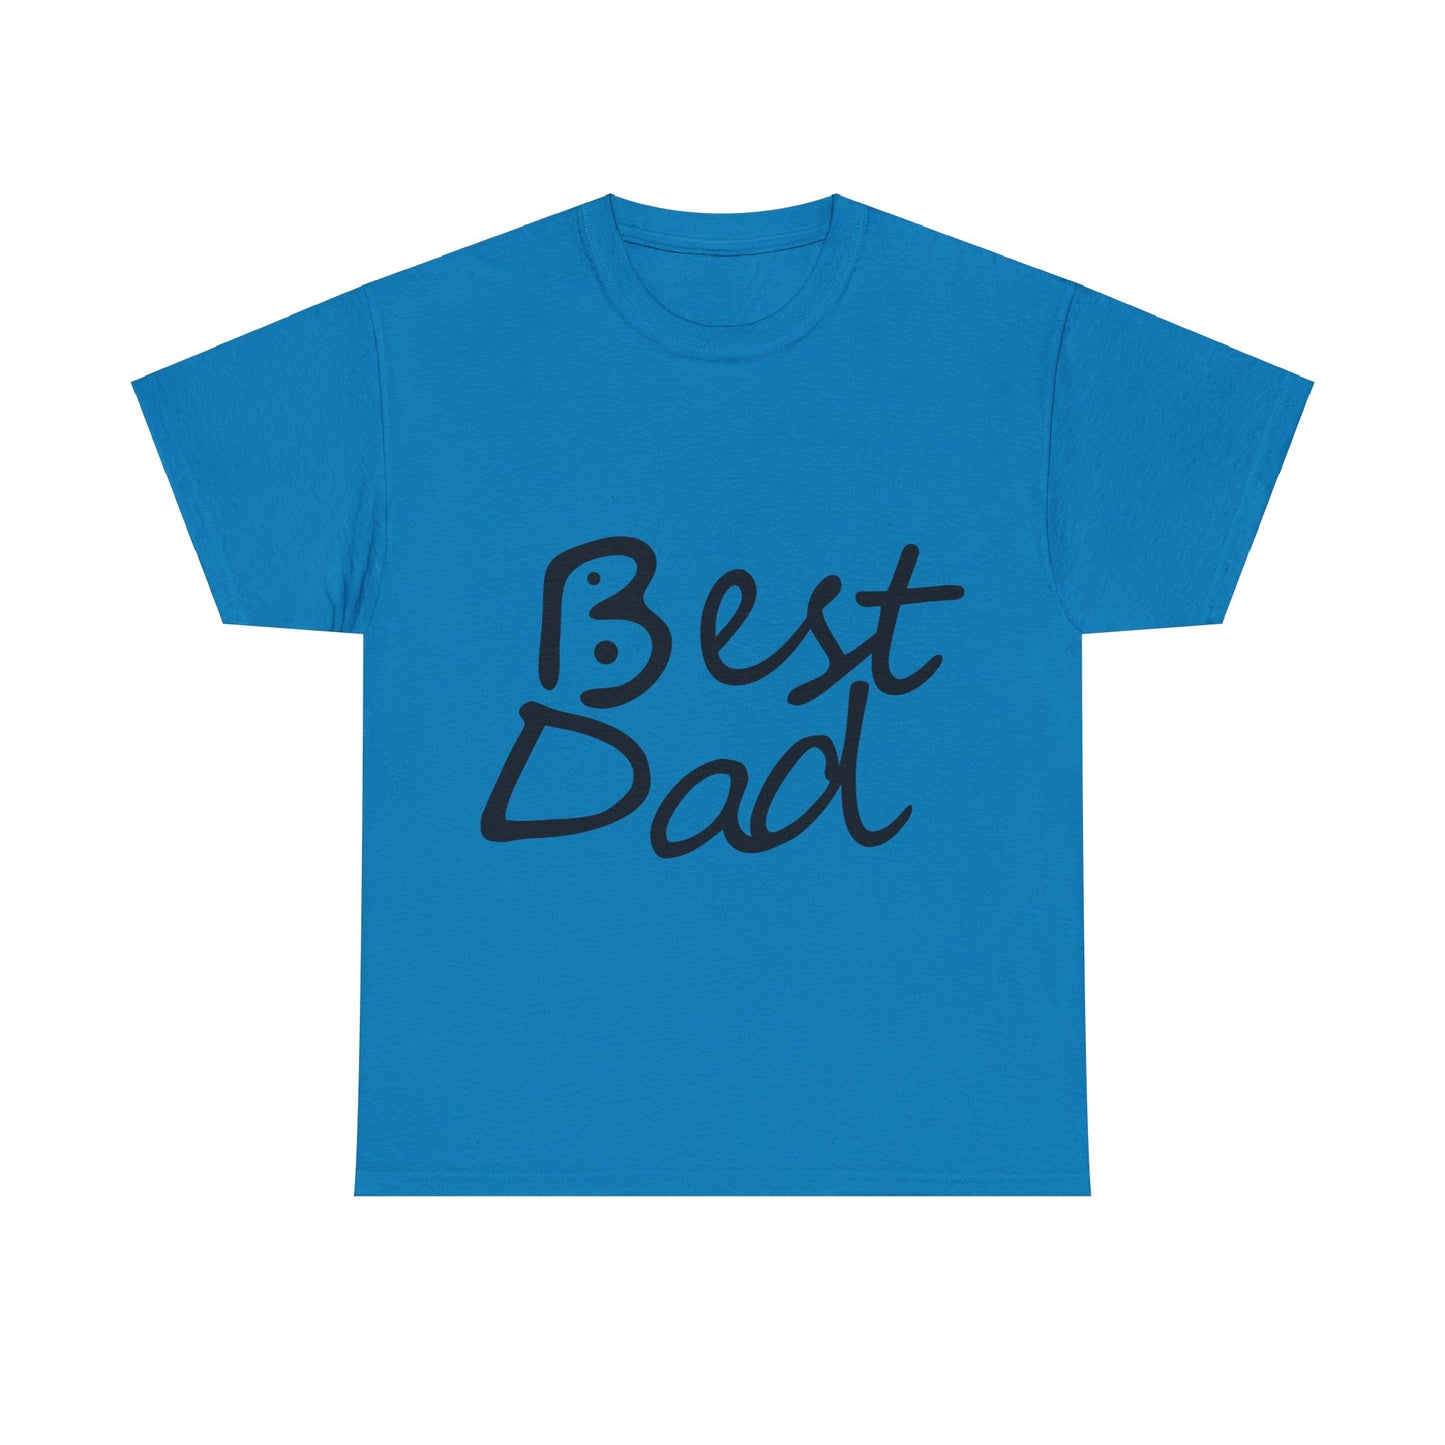 Best Dad, Bogan's Design